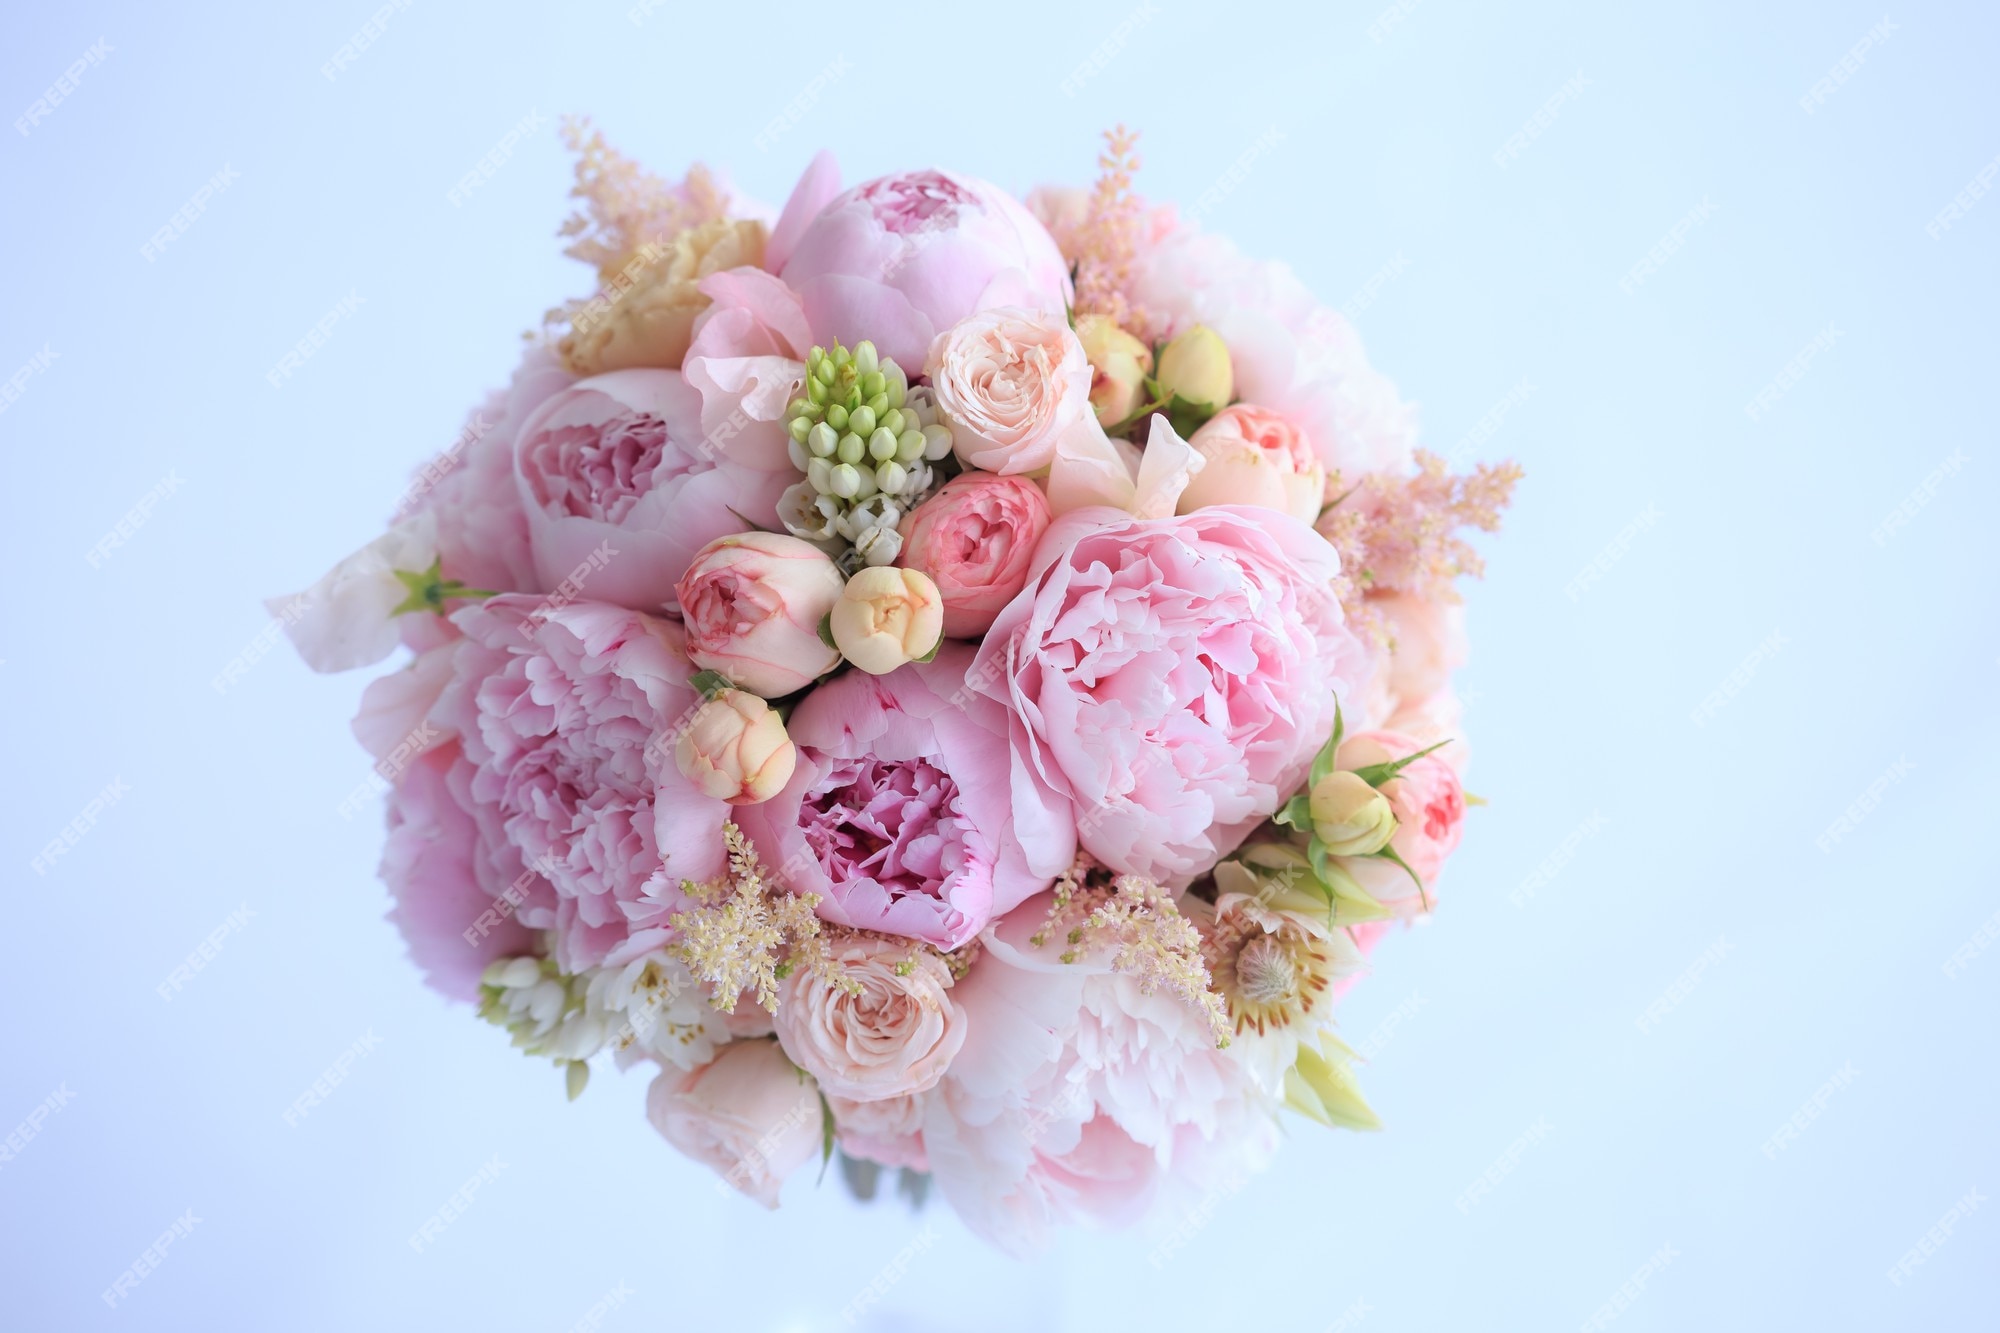 Lujoso ramo de boda de peonías rosas frescas, astilba, rosa inglesa y  claveles | Foto Premium